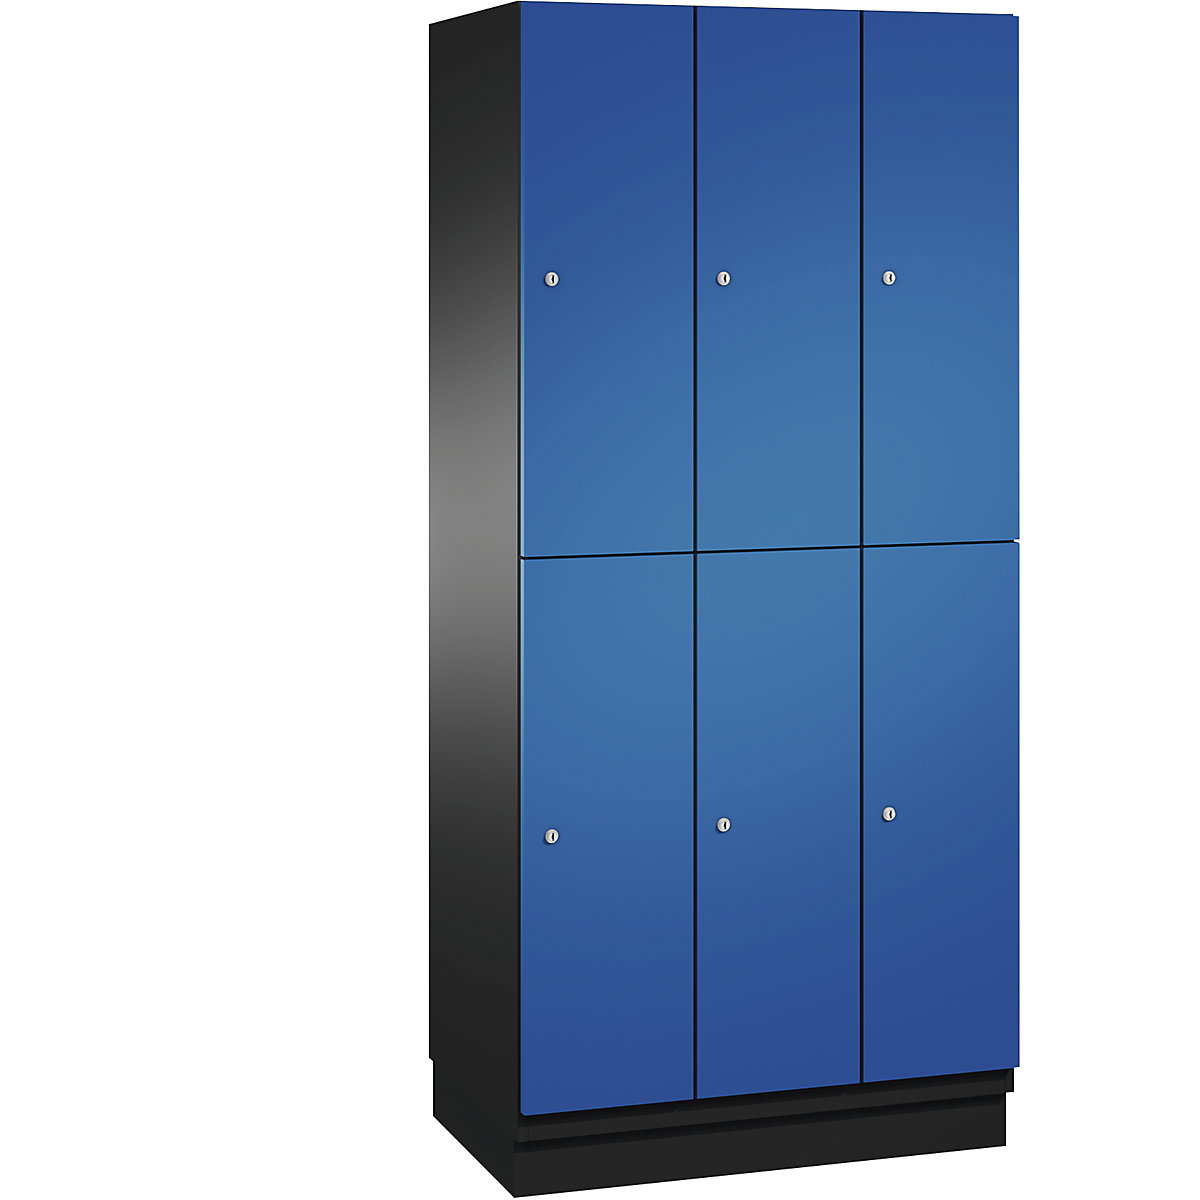 C+P – Skříň s boxy CAMBIO s tyčí na oděvy, 6 boxů, korpus černošedý / dveře hořcově modré, šířka 900 mm